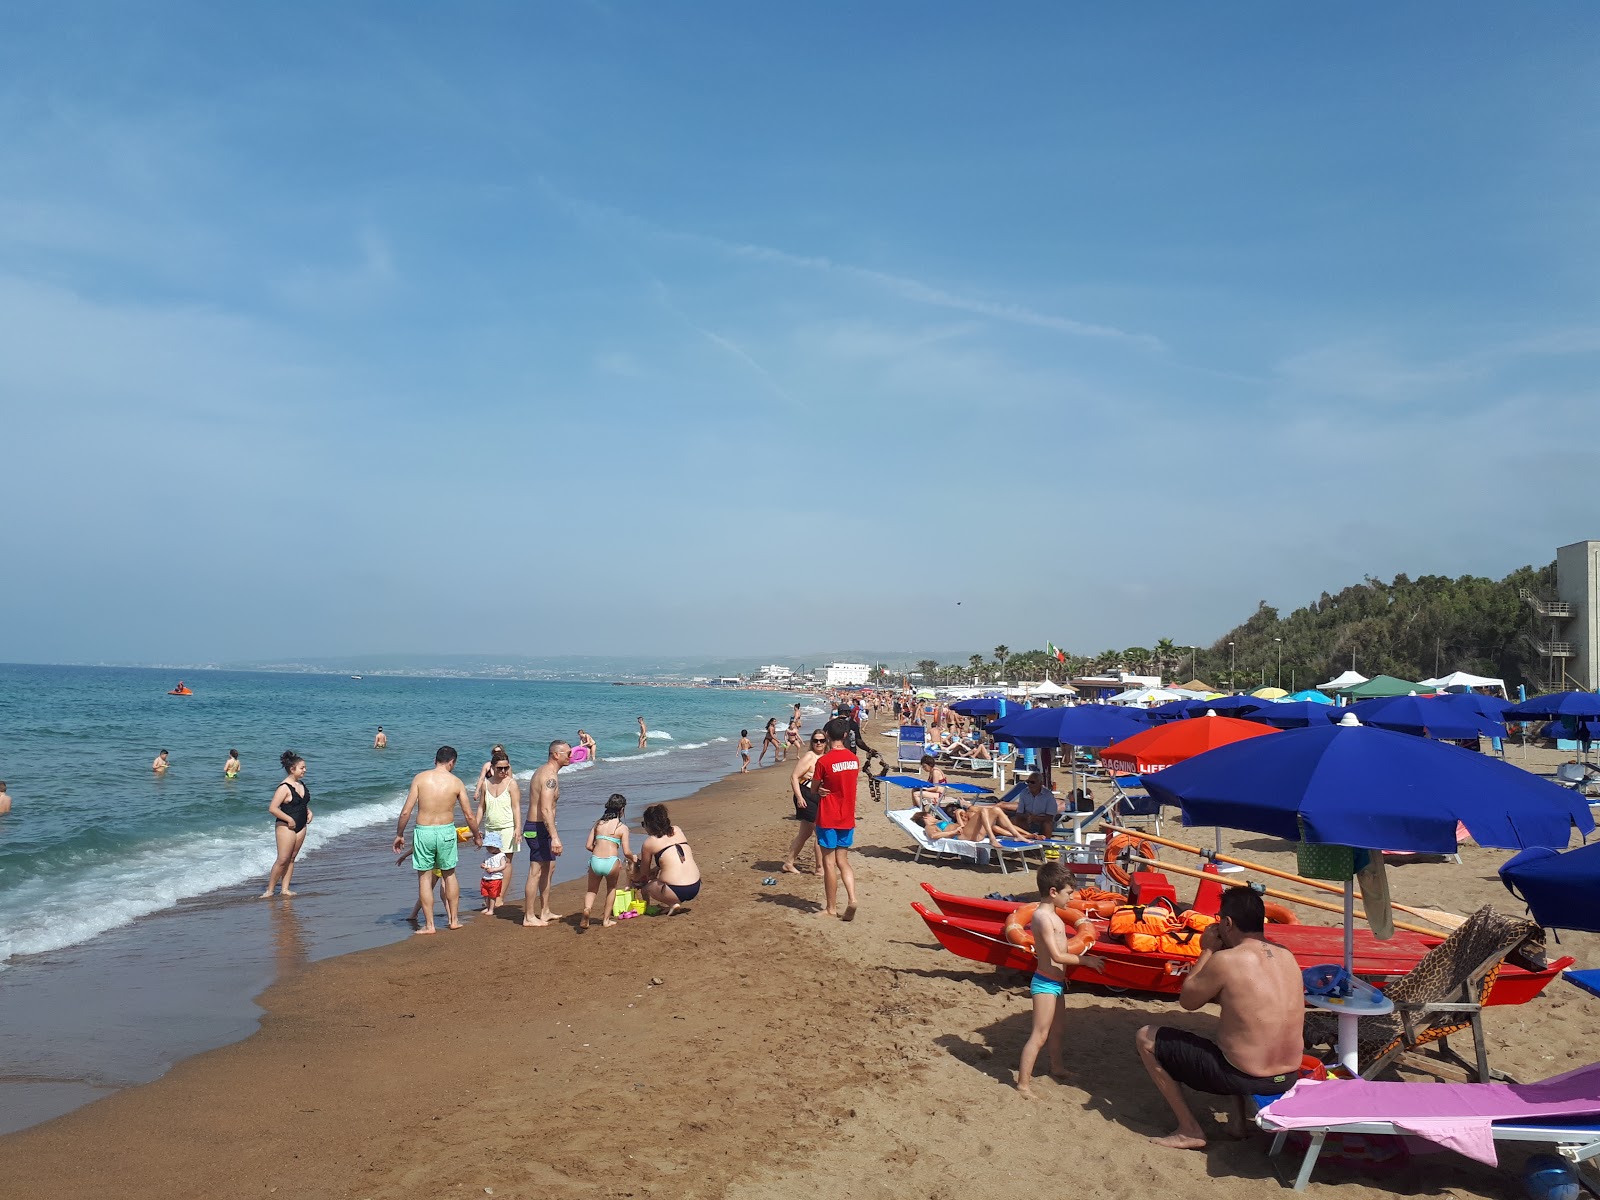 Santa Severa Plajı II'in fotoğrafı doğrudan plaj ile birlikte